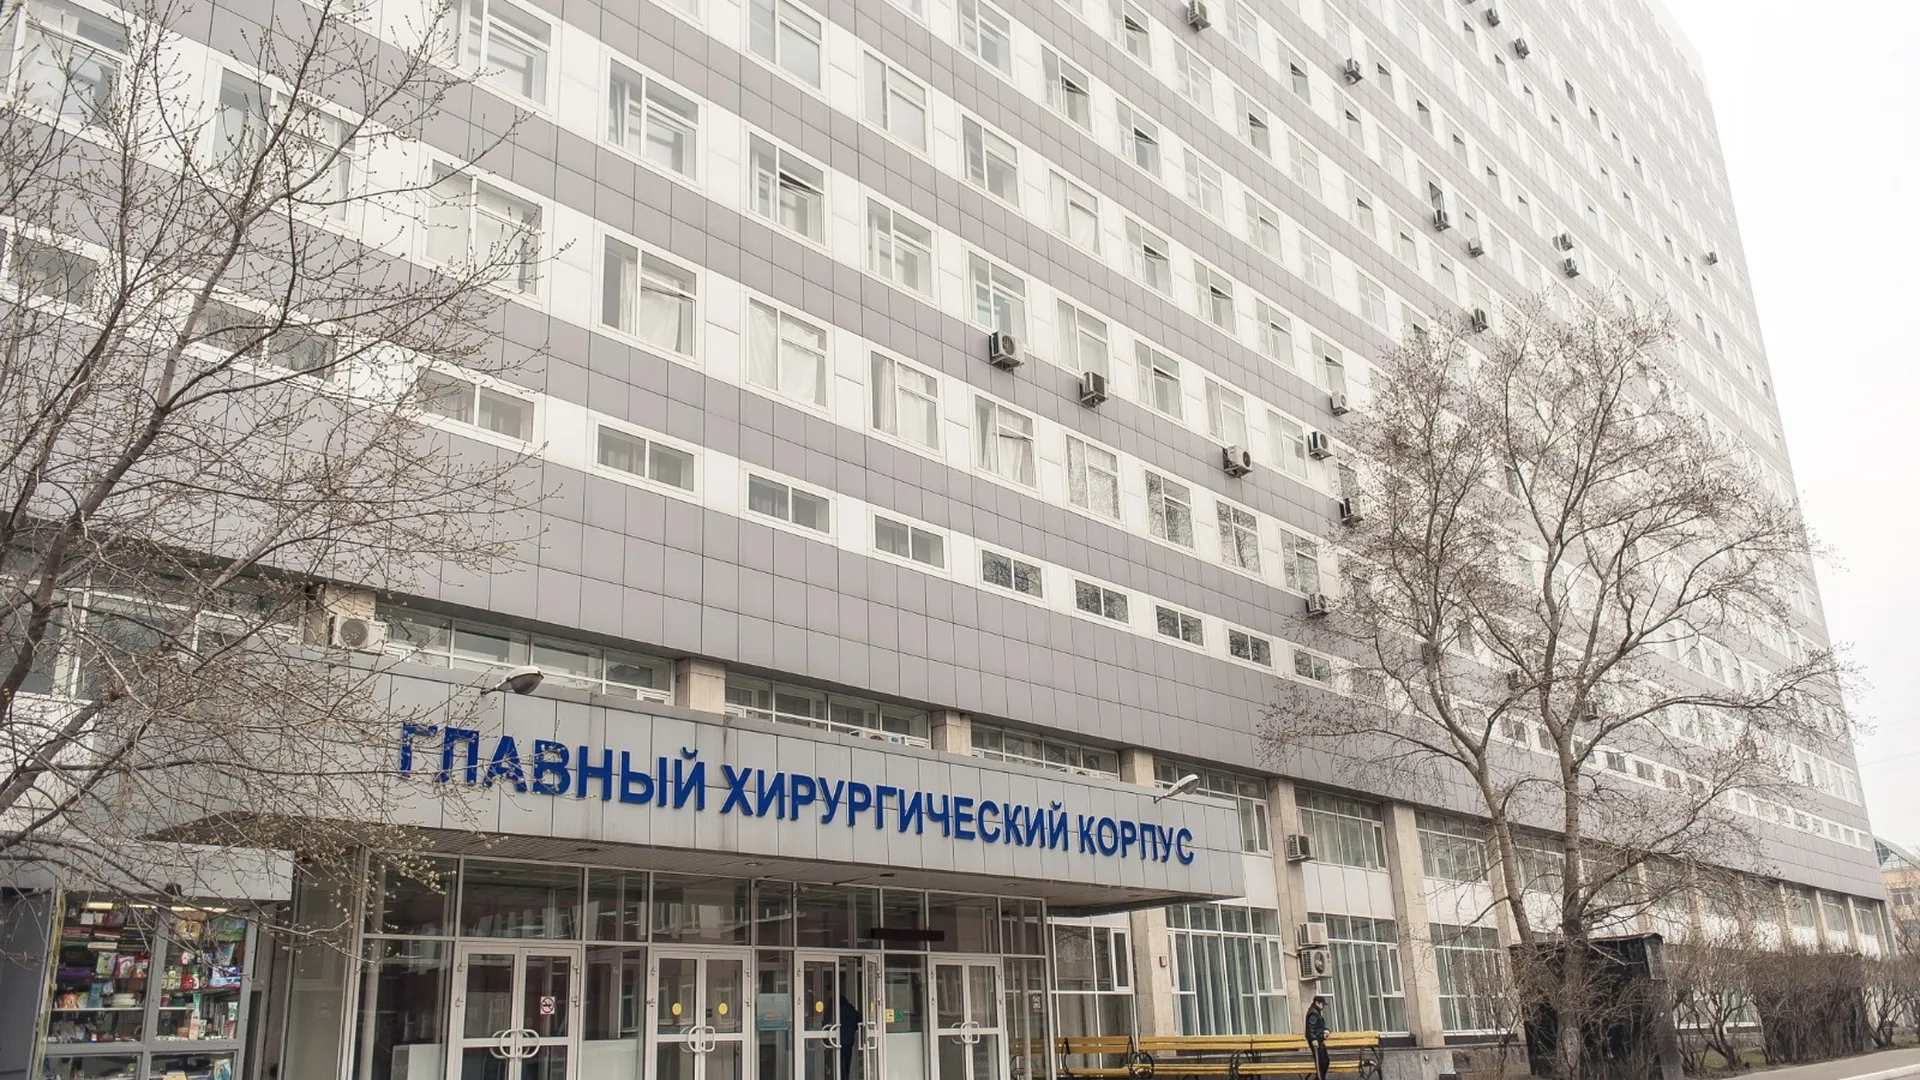 Пресс-служба главного контрольного управления Московской области